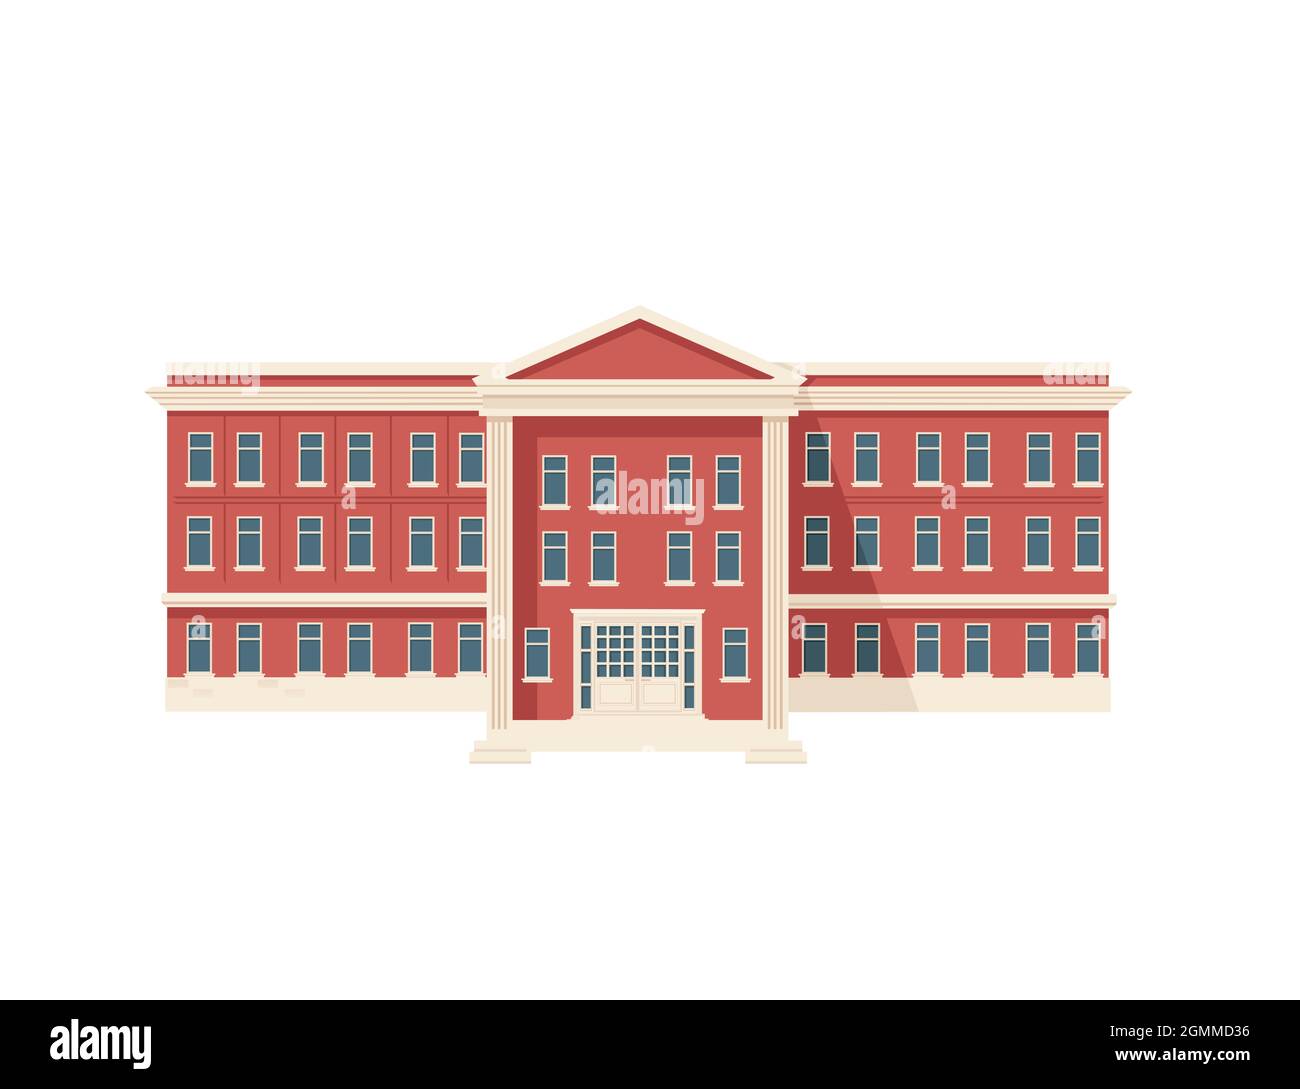 Rouge couleur classique architecture américaine gouvernement bâtiment illustration vectorielle sur fond blanc Illustration de Vecteur